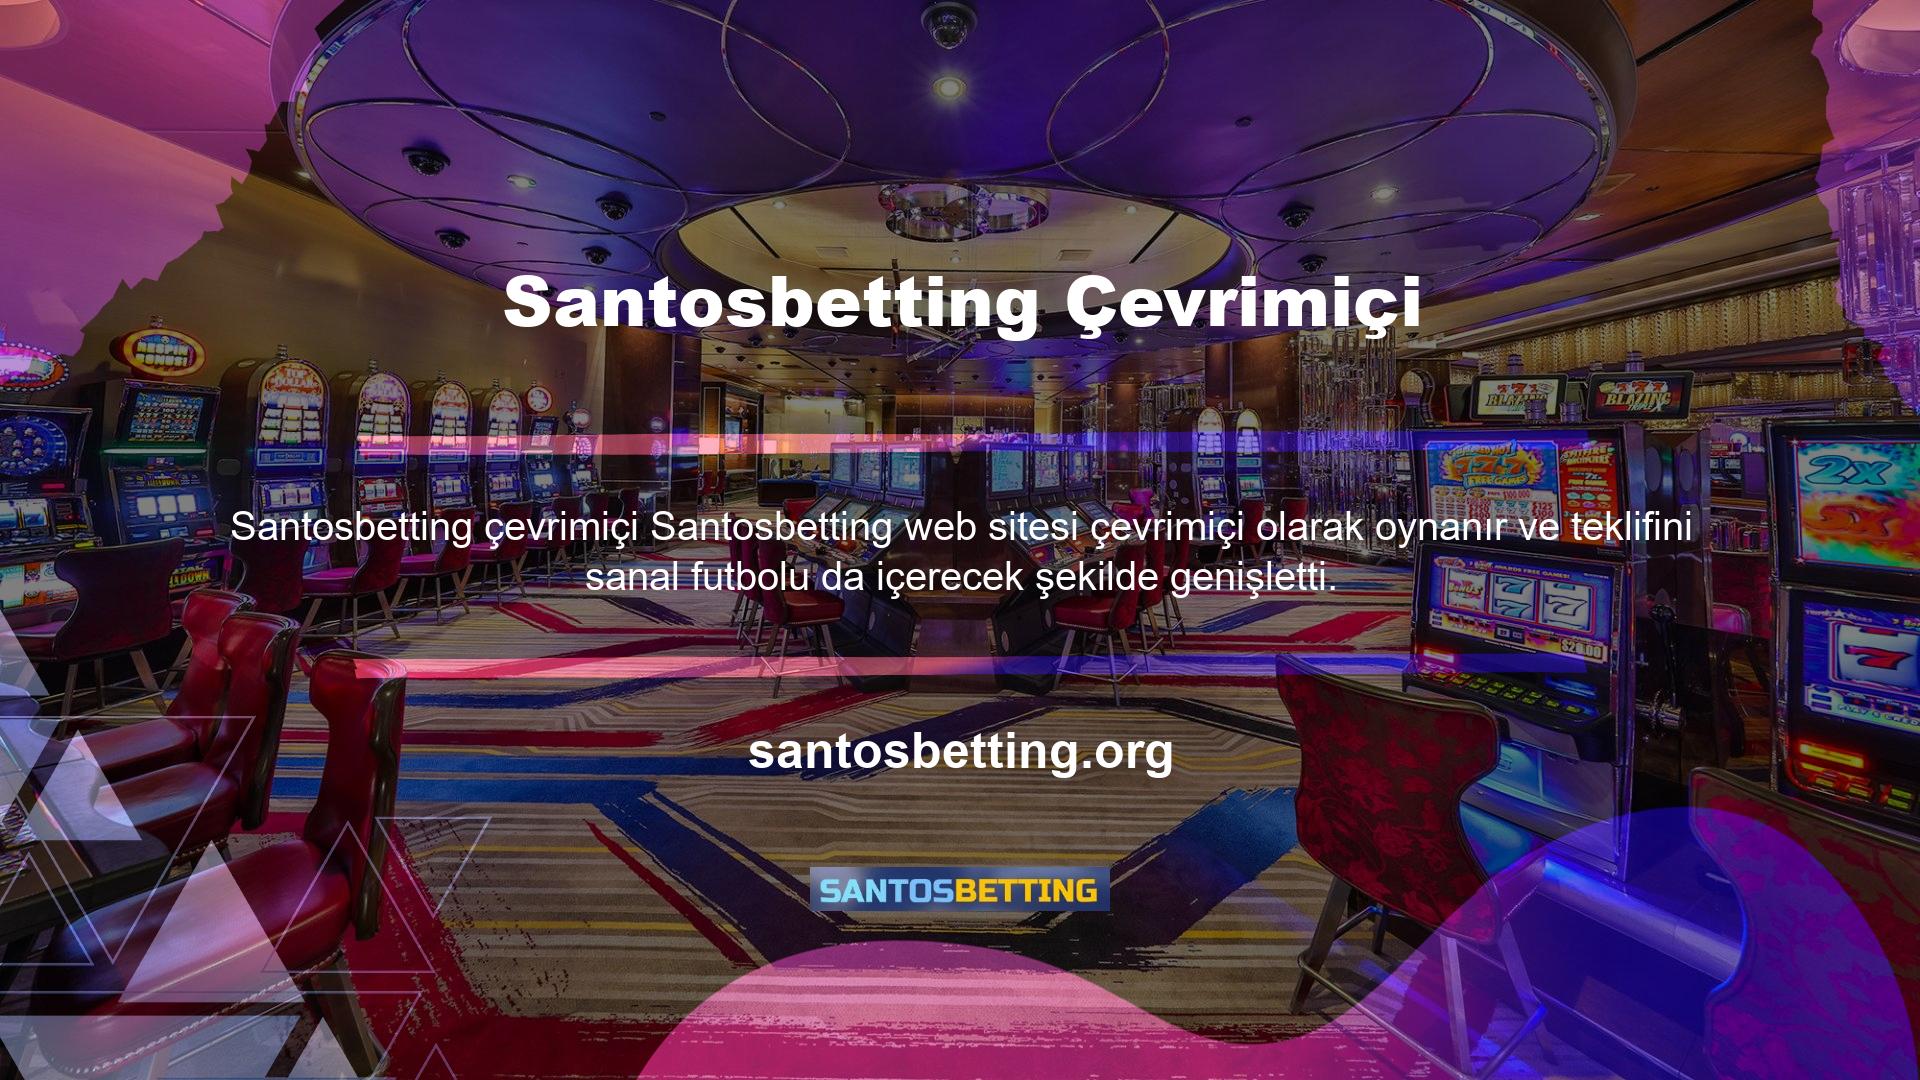 Santosbetting geniş bir sanal futbol yelpazesi sunuyor ve çok sayıda bahis seçeneği sunuyor